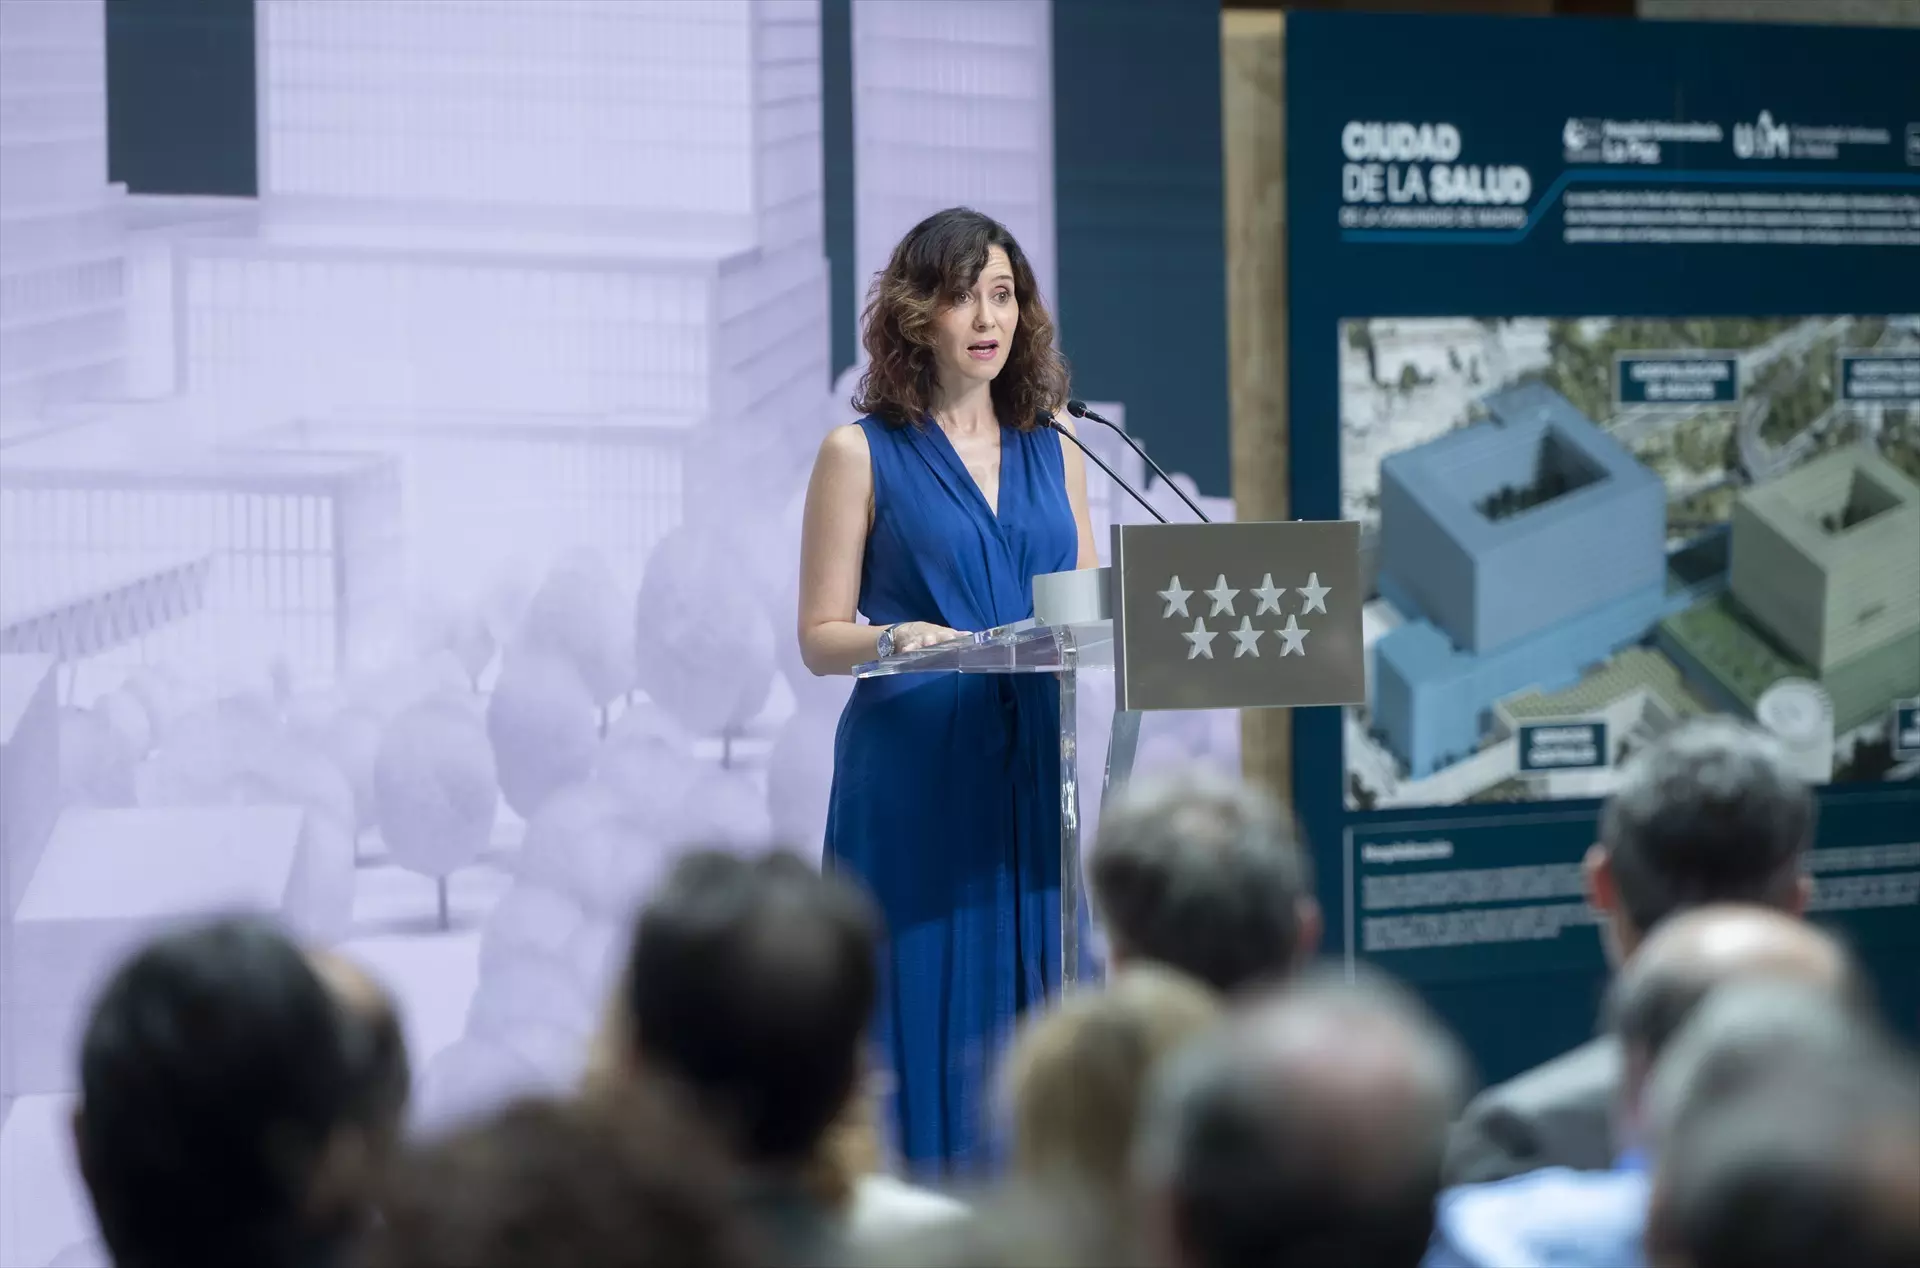 Isabel Díaz Ayuso interviene durante la presentación del nuevo proyecto Ciudad de la Salud de la Comunidad de Madrid, en la Real Casa de Correos. — Alberto Ortega / Europa Press